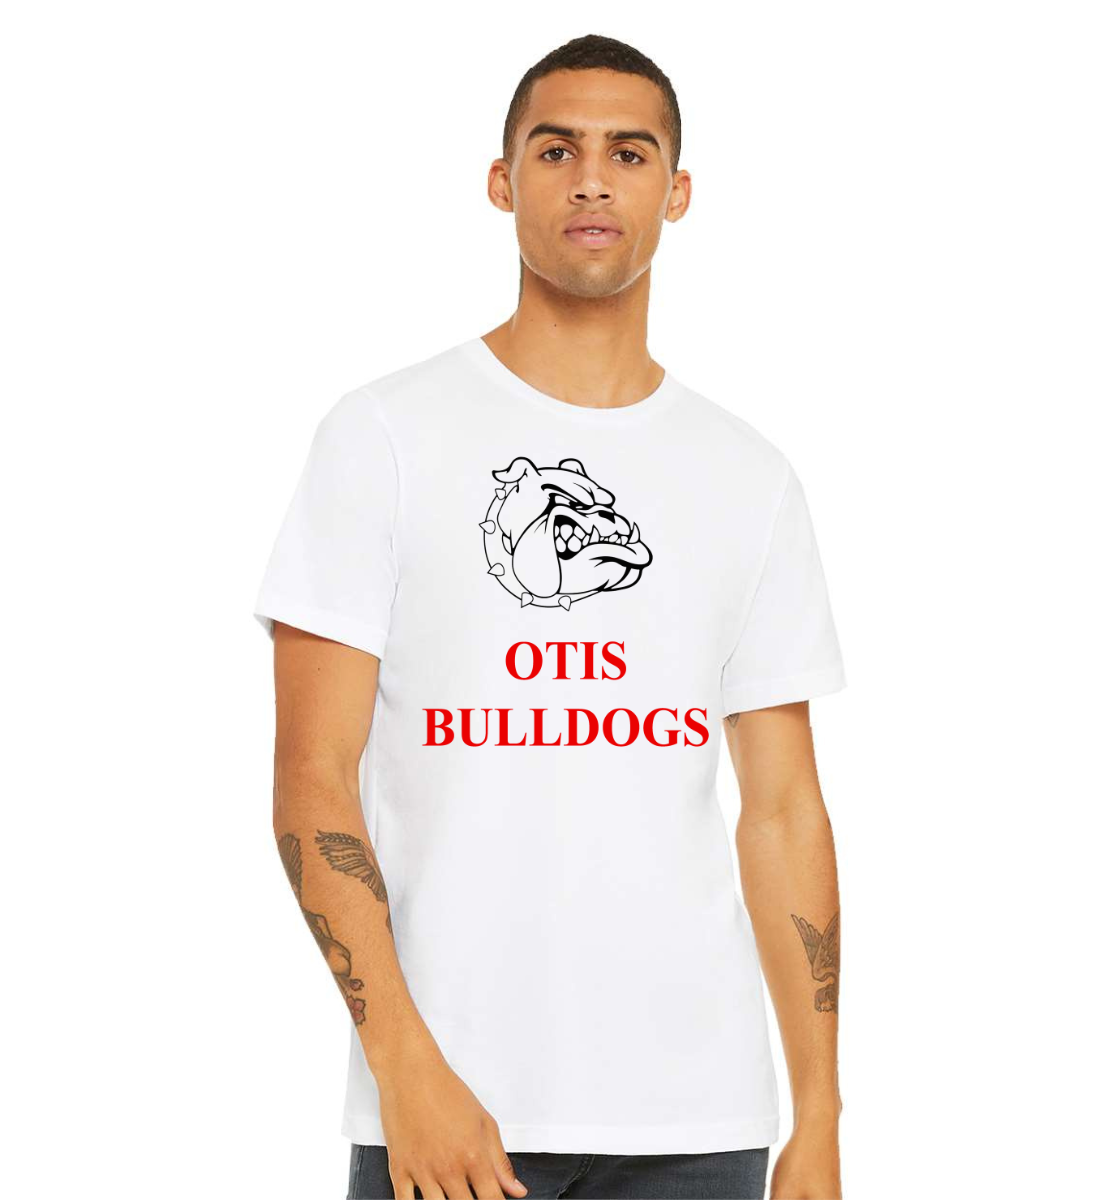 otis bulldogs t-shirt: for otis bulldogs fans only!